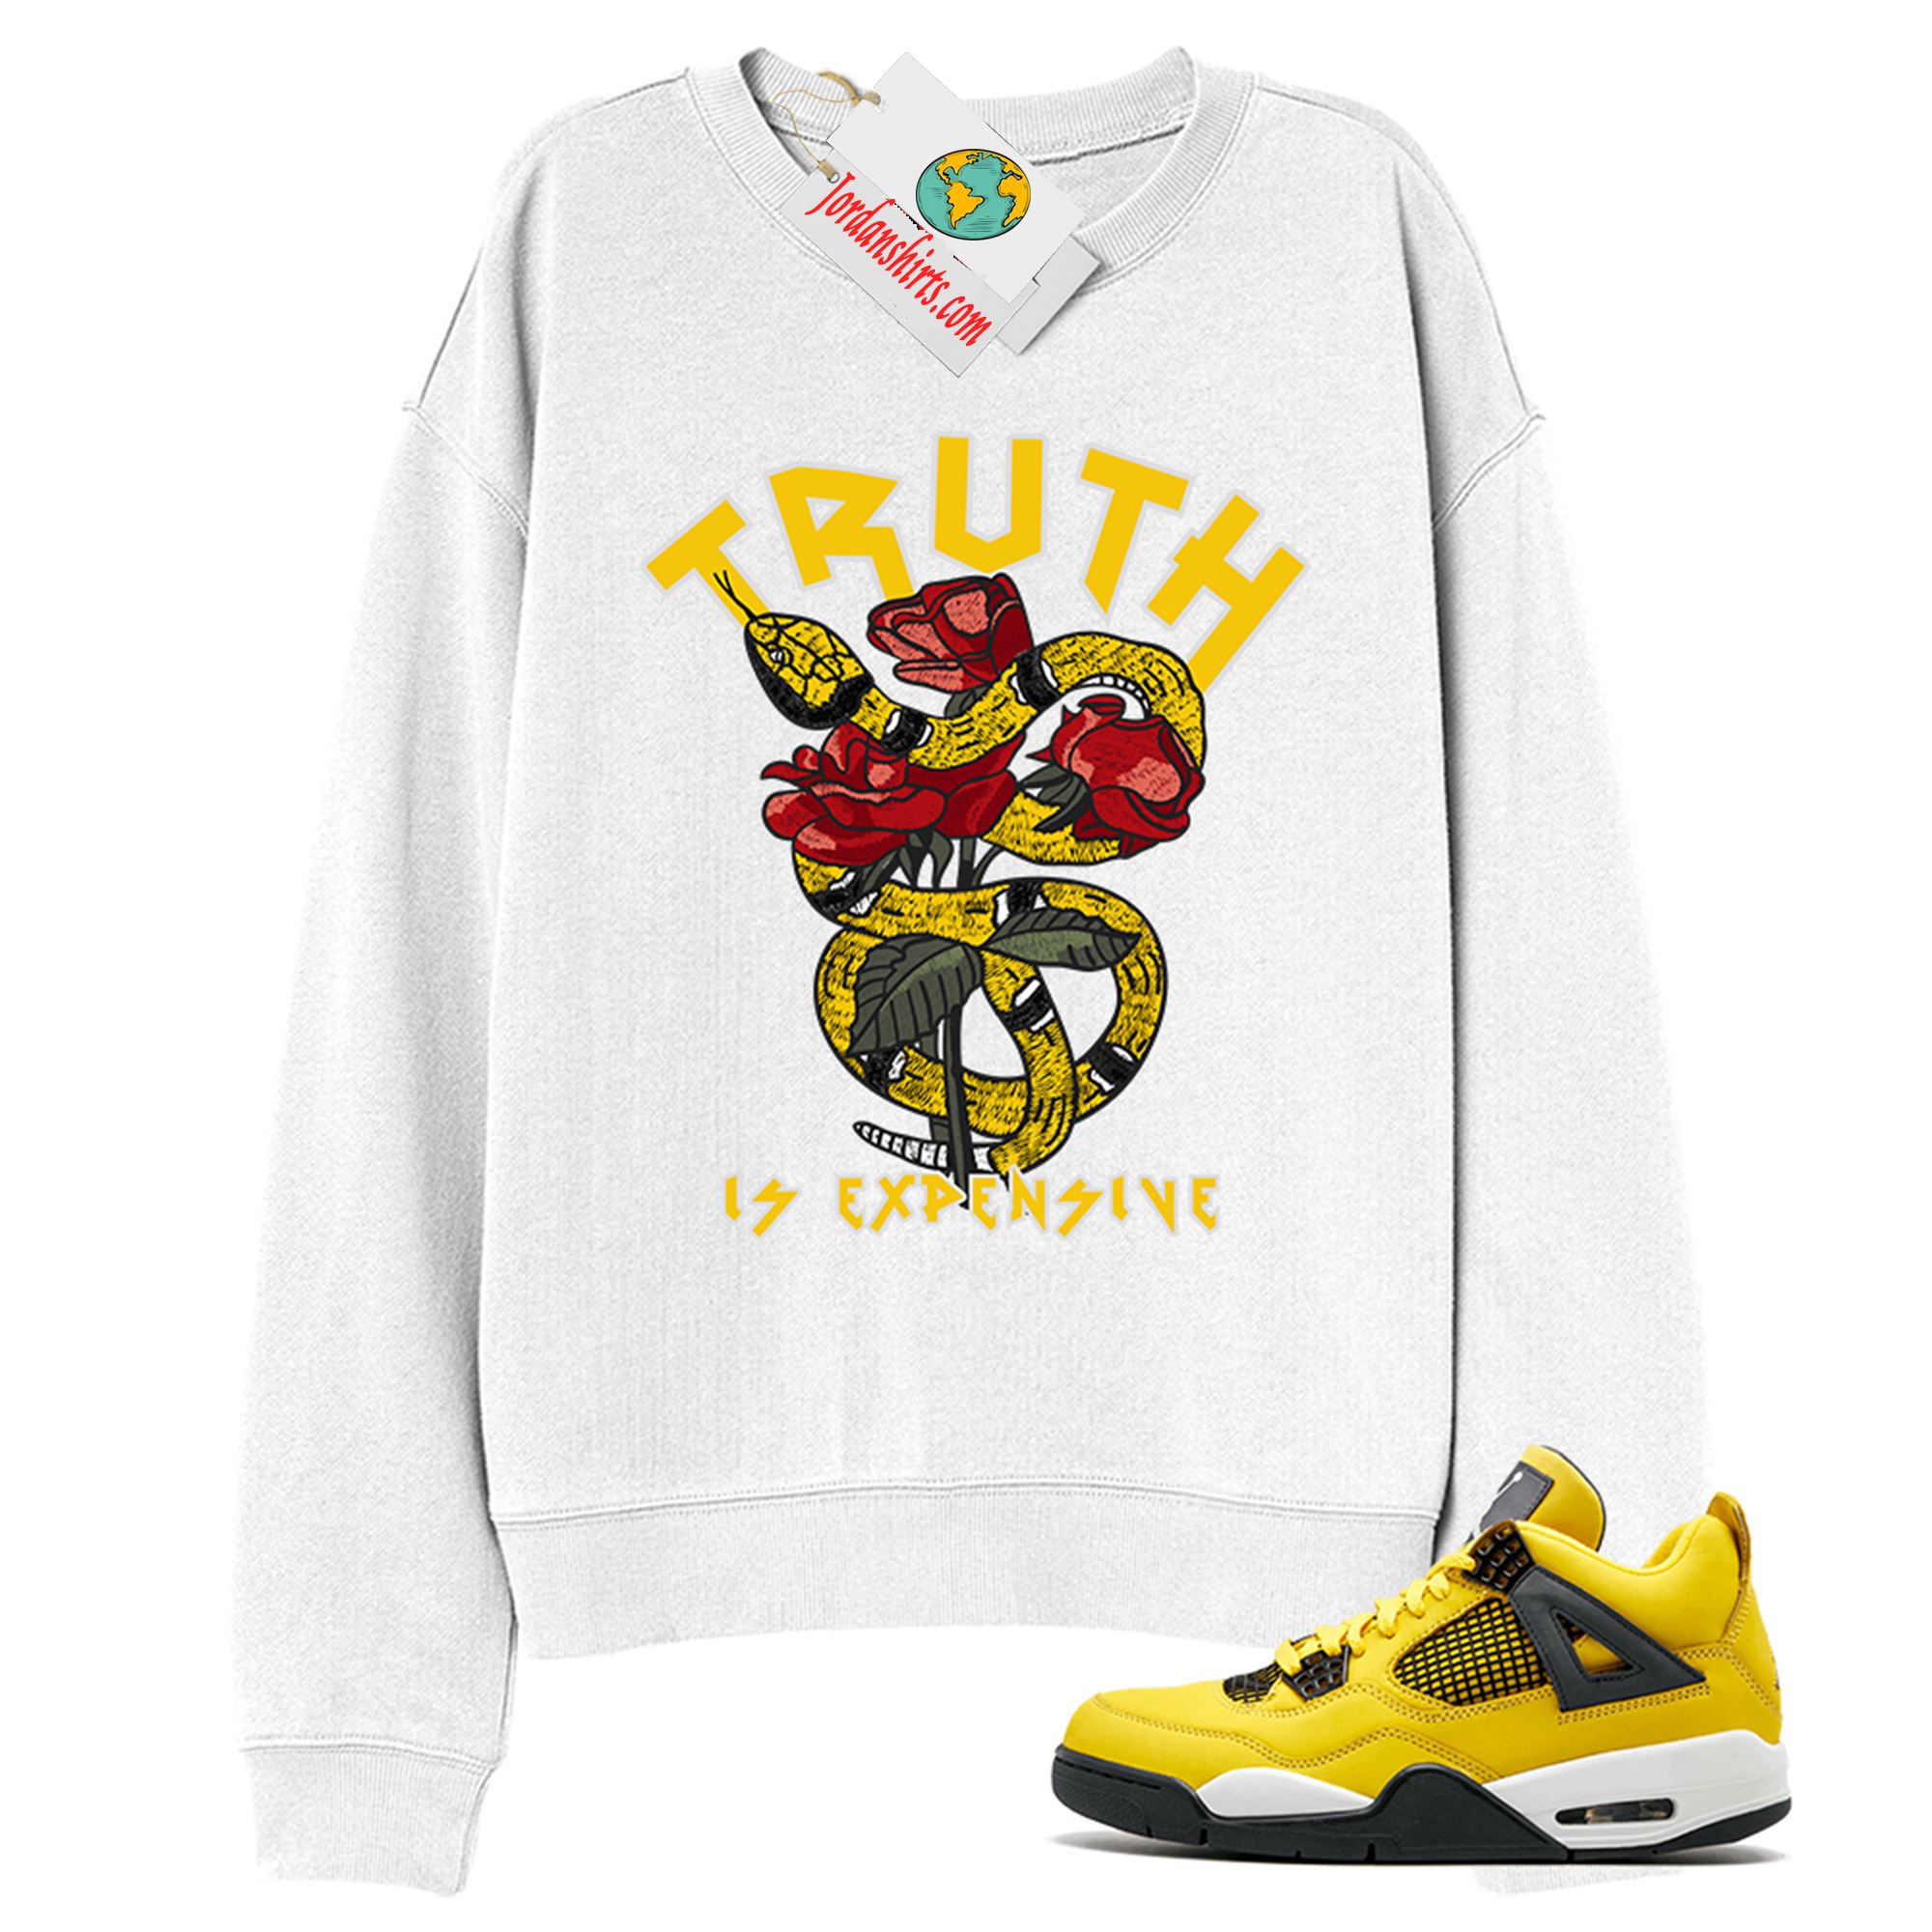 Jordan 4 Sweatshirt, Truth Is Expensive Snake White Sweatshirt Air Jordan 4 Tour Yellow Lightning 4s Size Up To 5xl